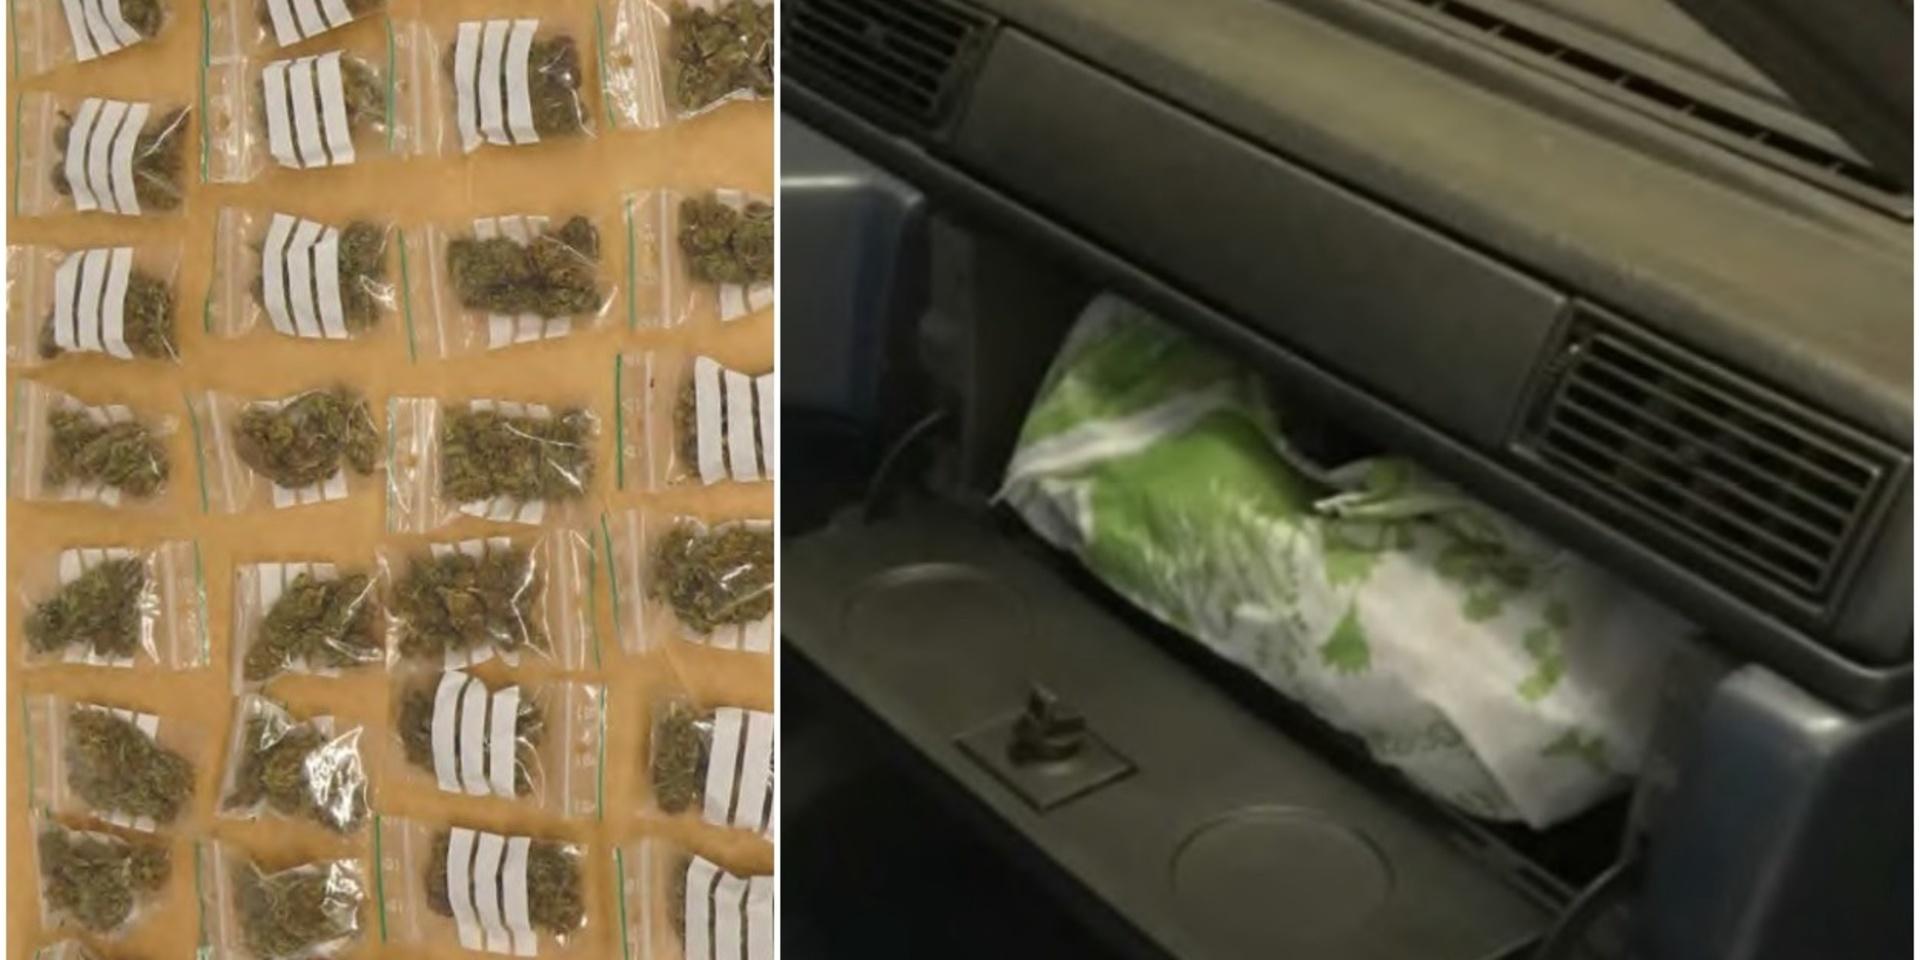 Portionsförpackningar om 4,5 gram cannabis som beslagtagits. Narkotikan förvarades i ”packebilar”.